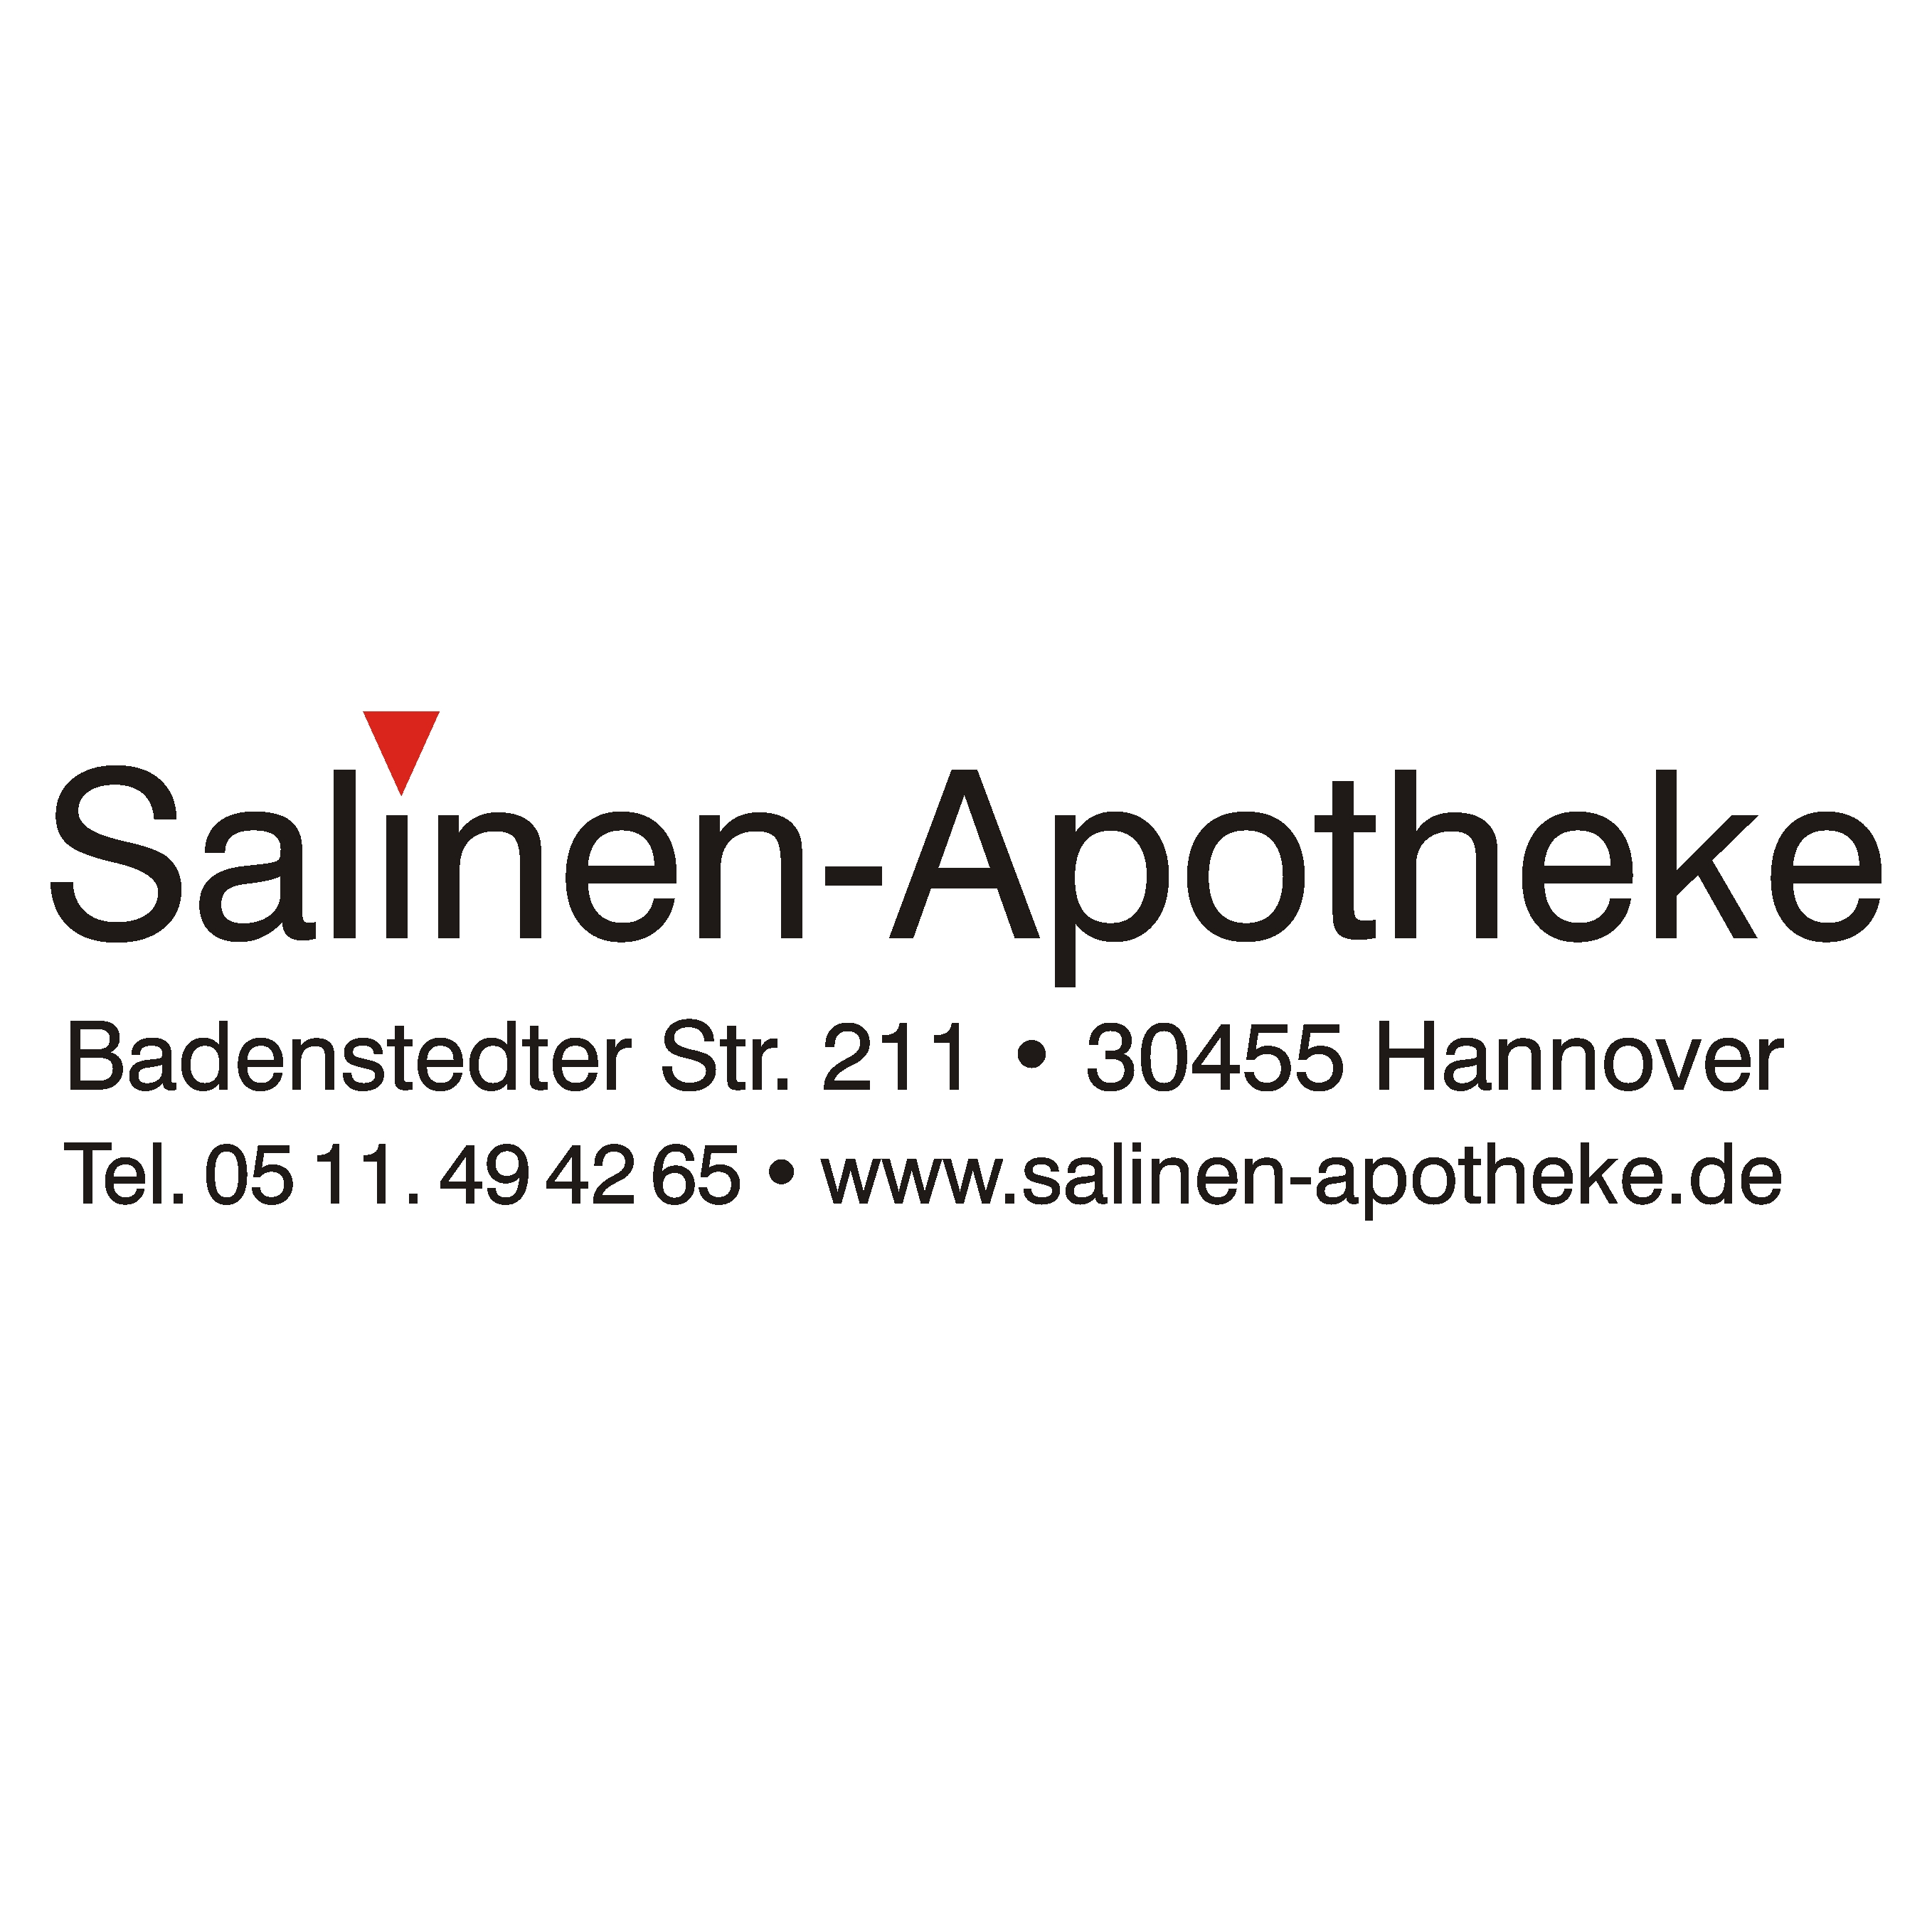 Salinen-Apotheke in Hannover - Logo